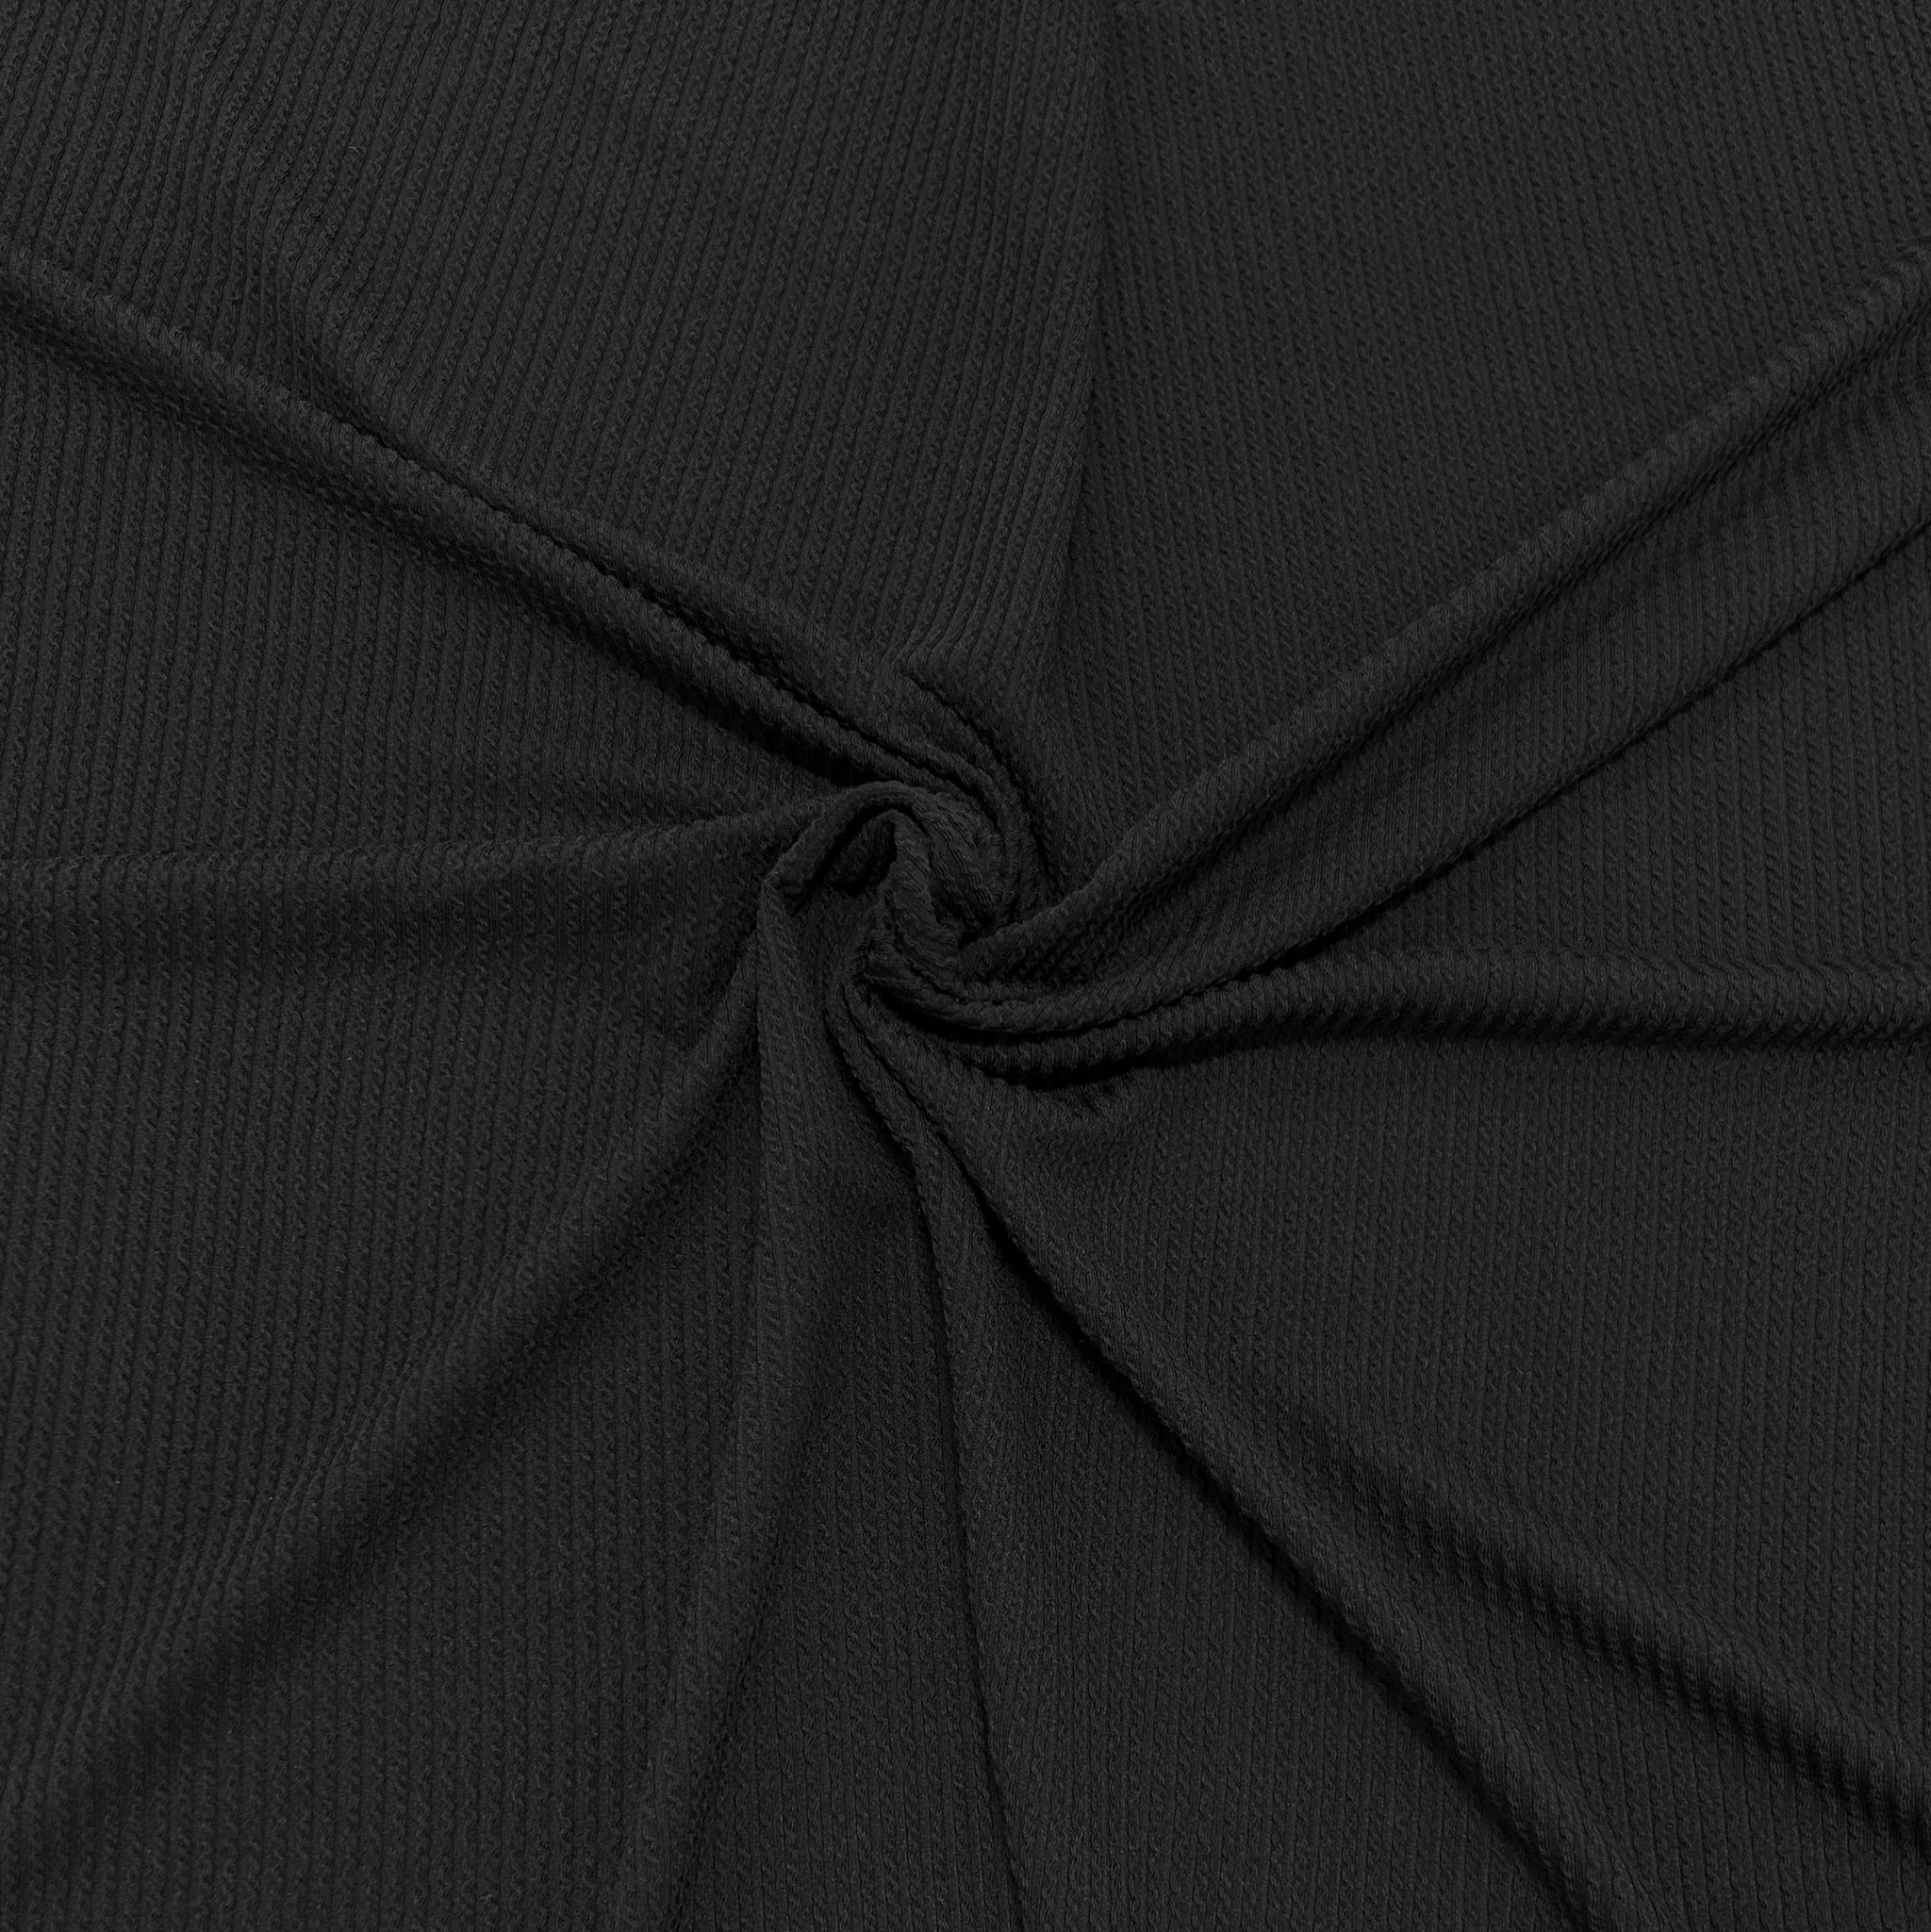 Ribbing Fabric Black